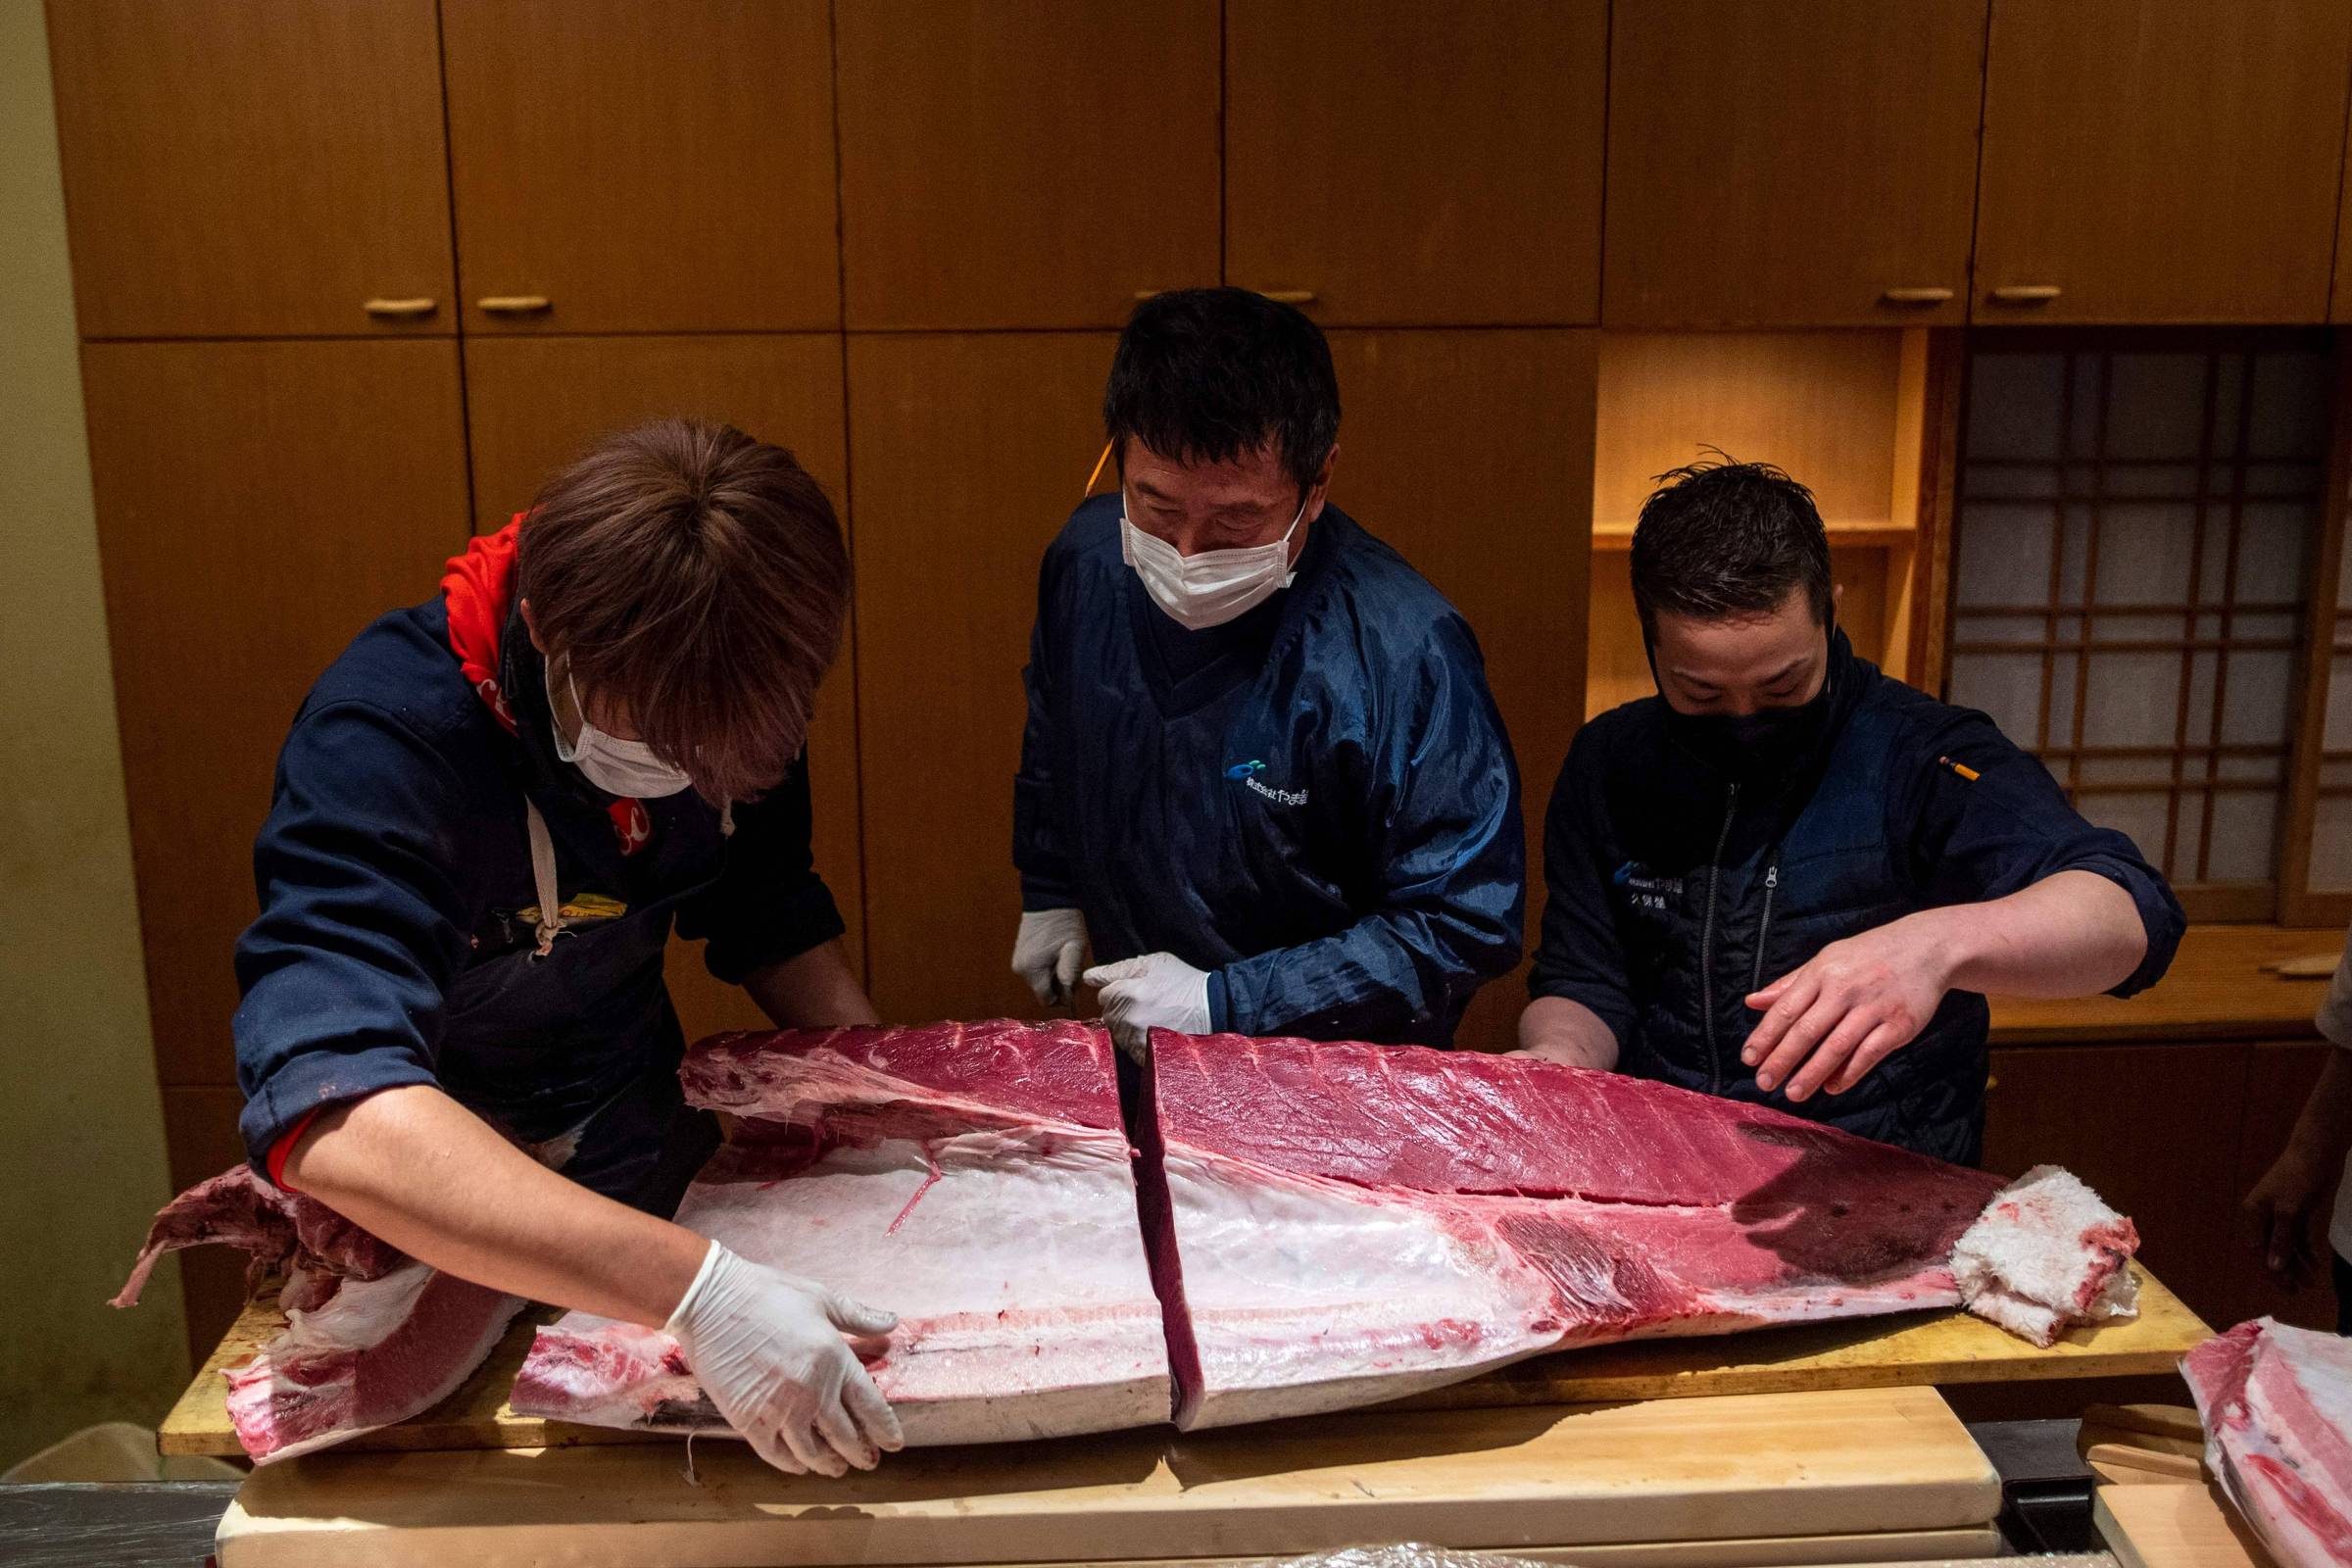 Pandemia afeta leilão do atum no Japão, e peixe é vendido por R$ 1 milhão -  05/01/2021 - Mercado - Folha